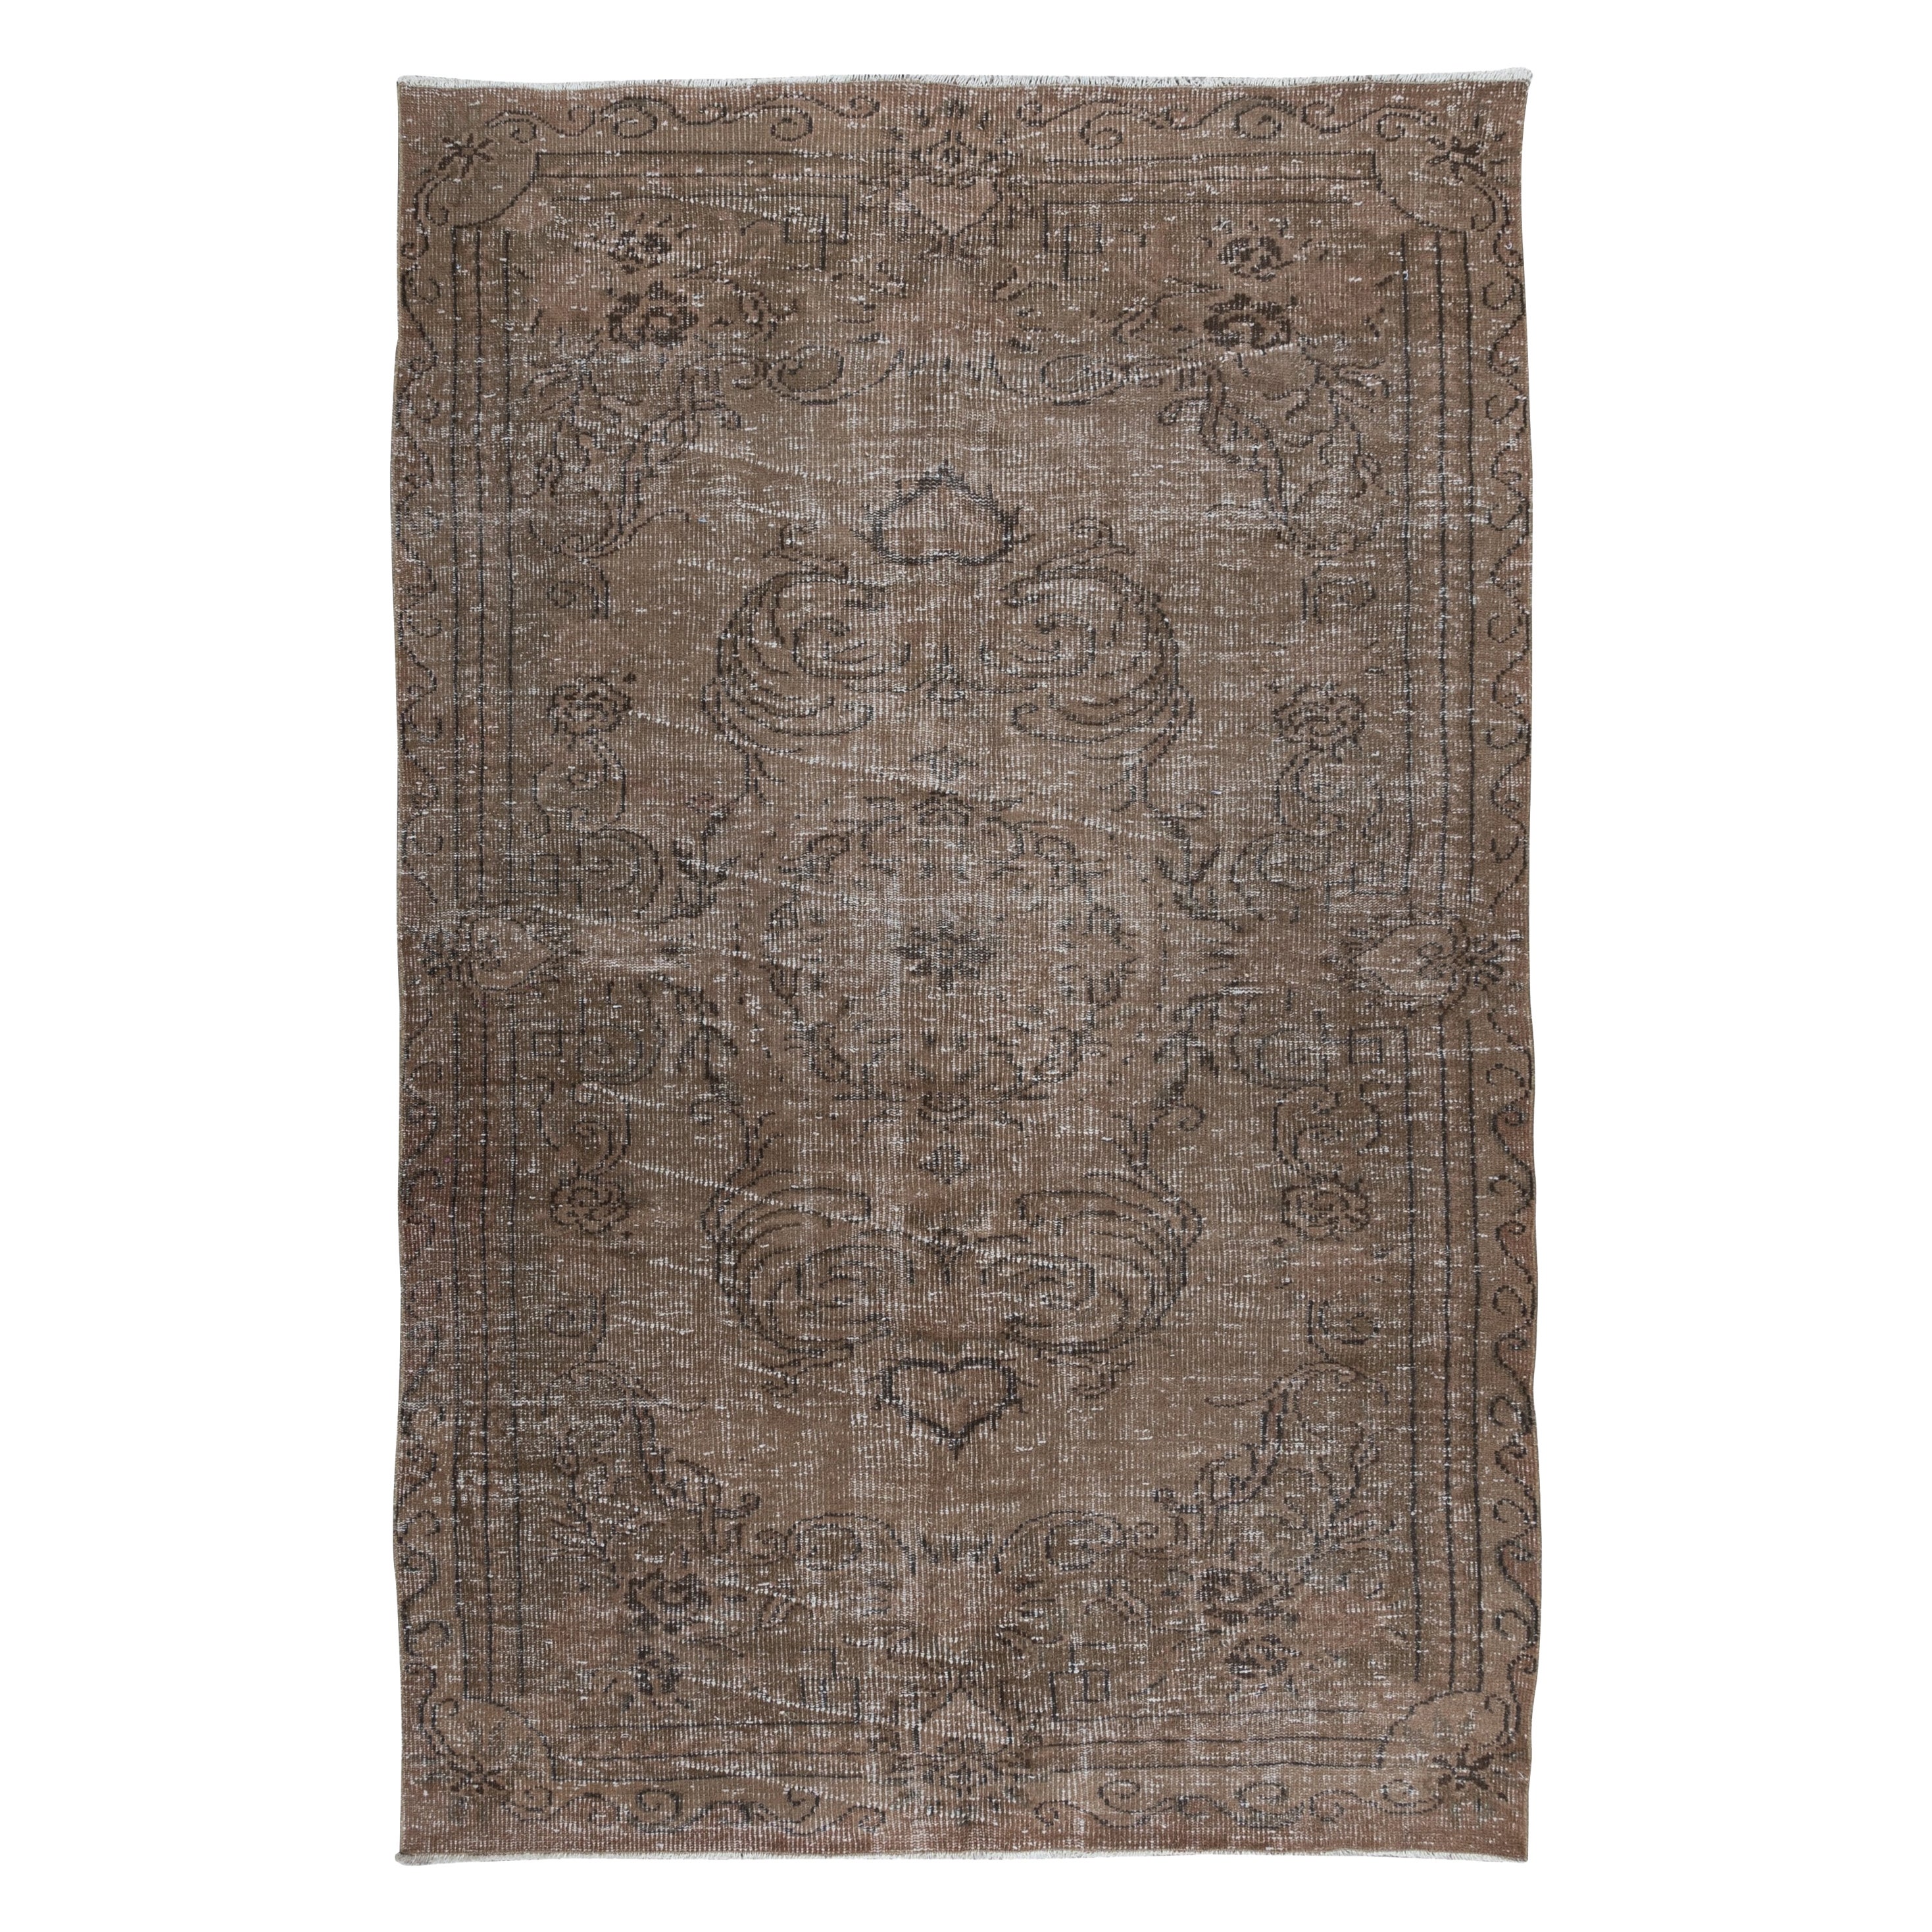 5.6x8.6 Ft Handgefertigter Teppich mit Medaillon Design in Brown, Vintage Türkischer Teppich